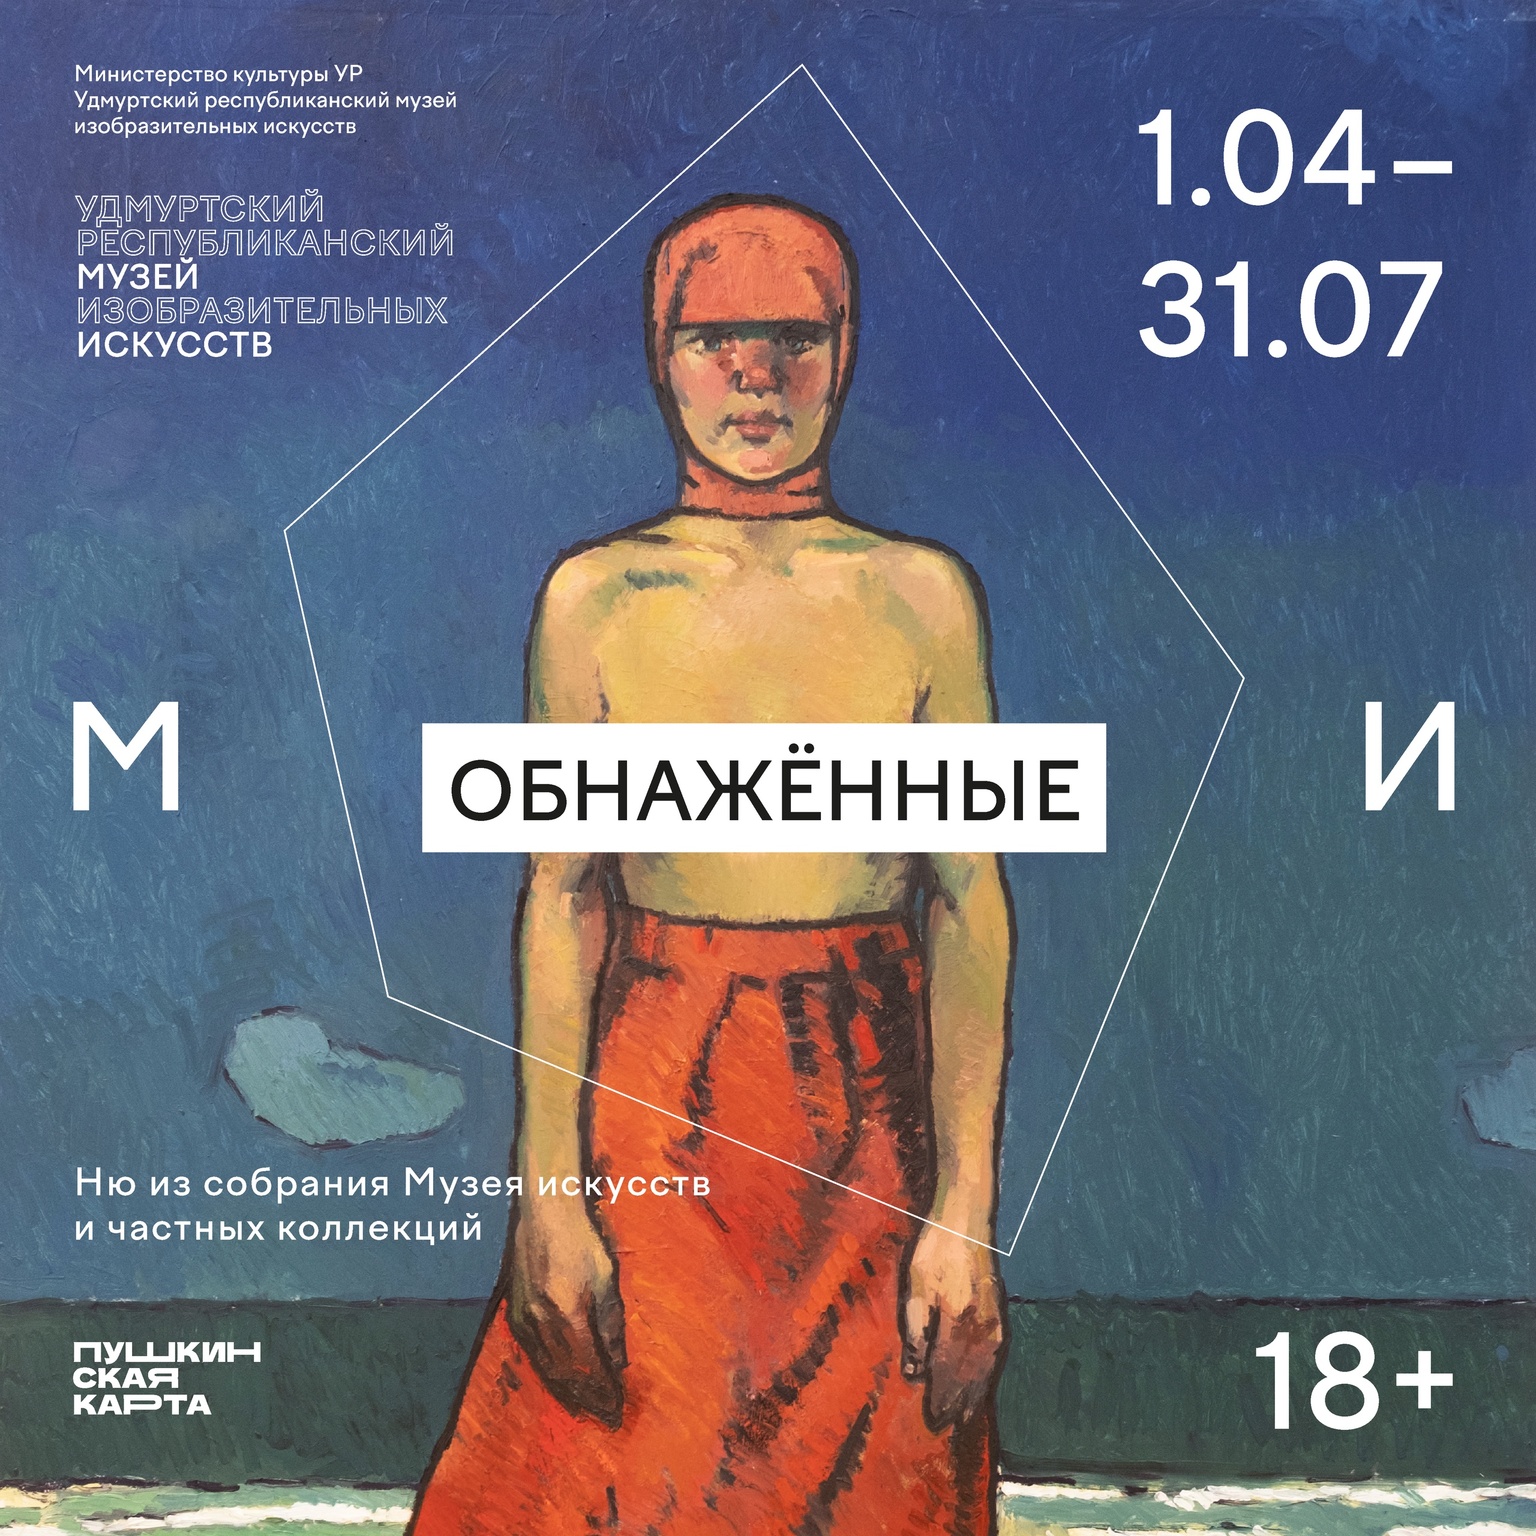 Афиша Ижевска — Выставка «Обнажённые»